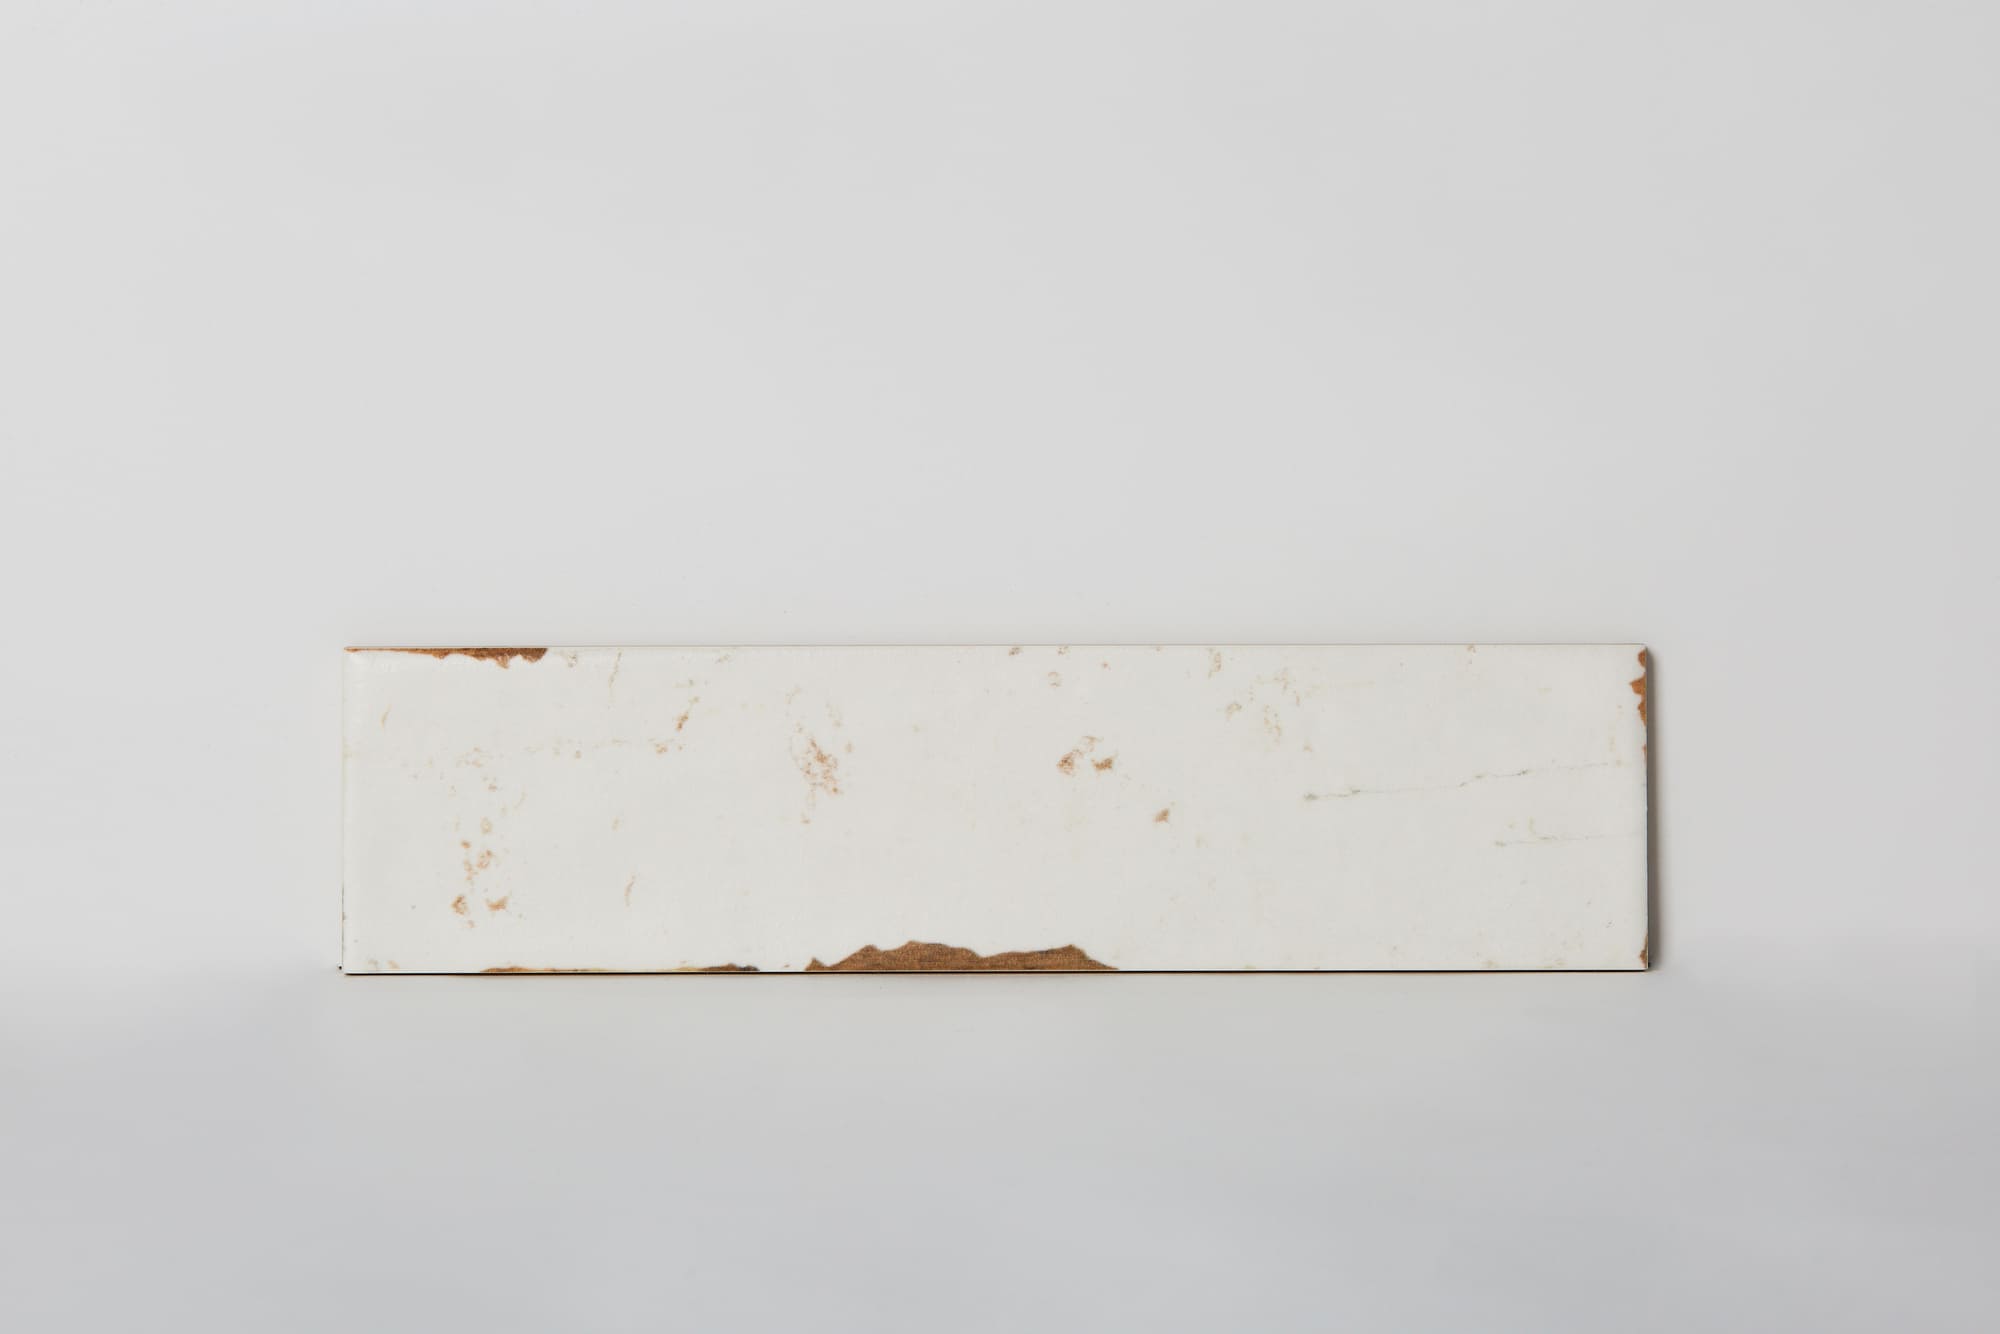 Białe płytki w stylu retro, Peronda Harmony Uptown Plain 7,5x30cm. Płyta wygląda jak malowane białą farbą drewno. Kafelki w starym stylu na ścianę do kuchni lub łazienki.